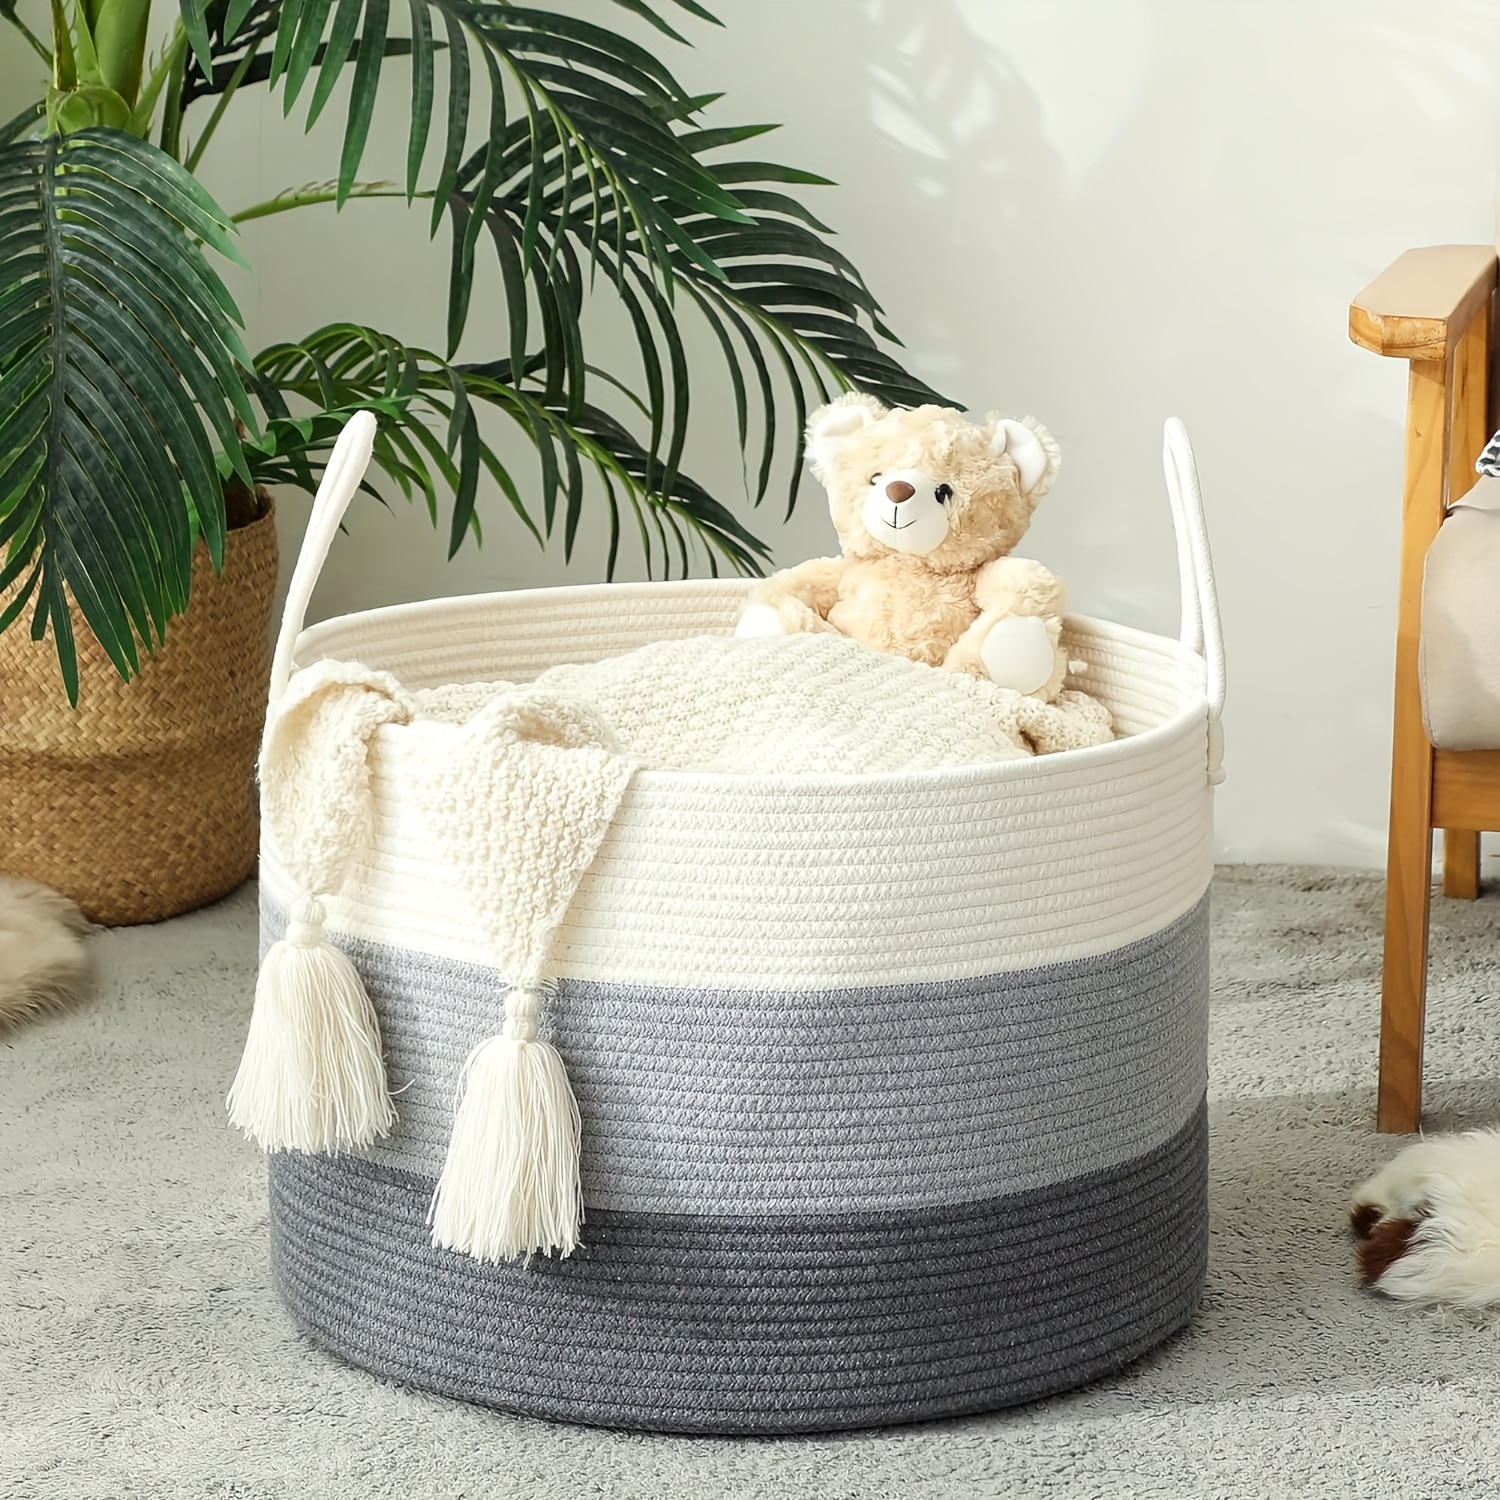 Laughbird Cestas para organizar grandes cestas rectangulares tejidas de  cuerda de algodón, color blanco con asas para estantes, cuarto de bebé